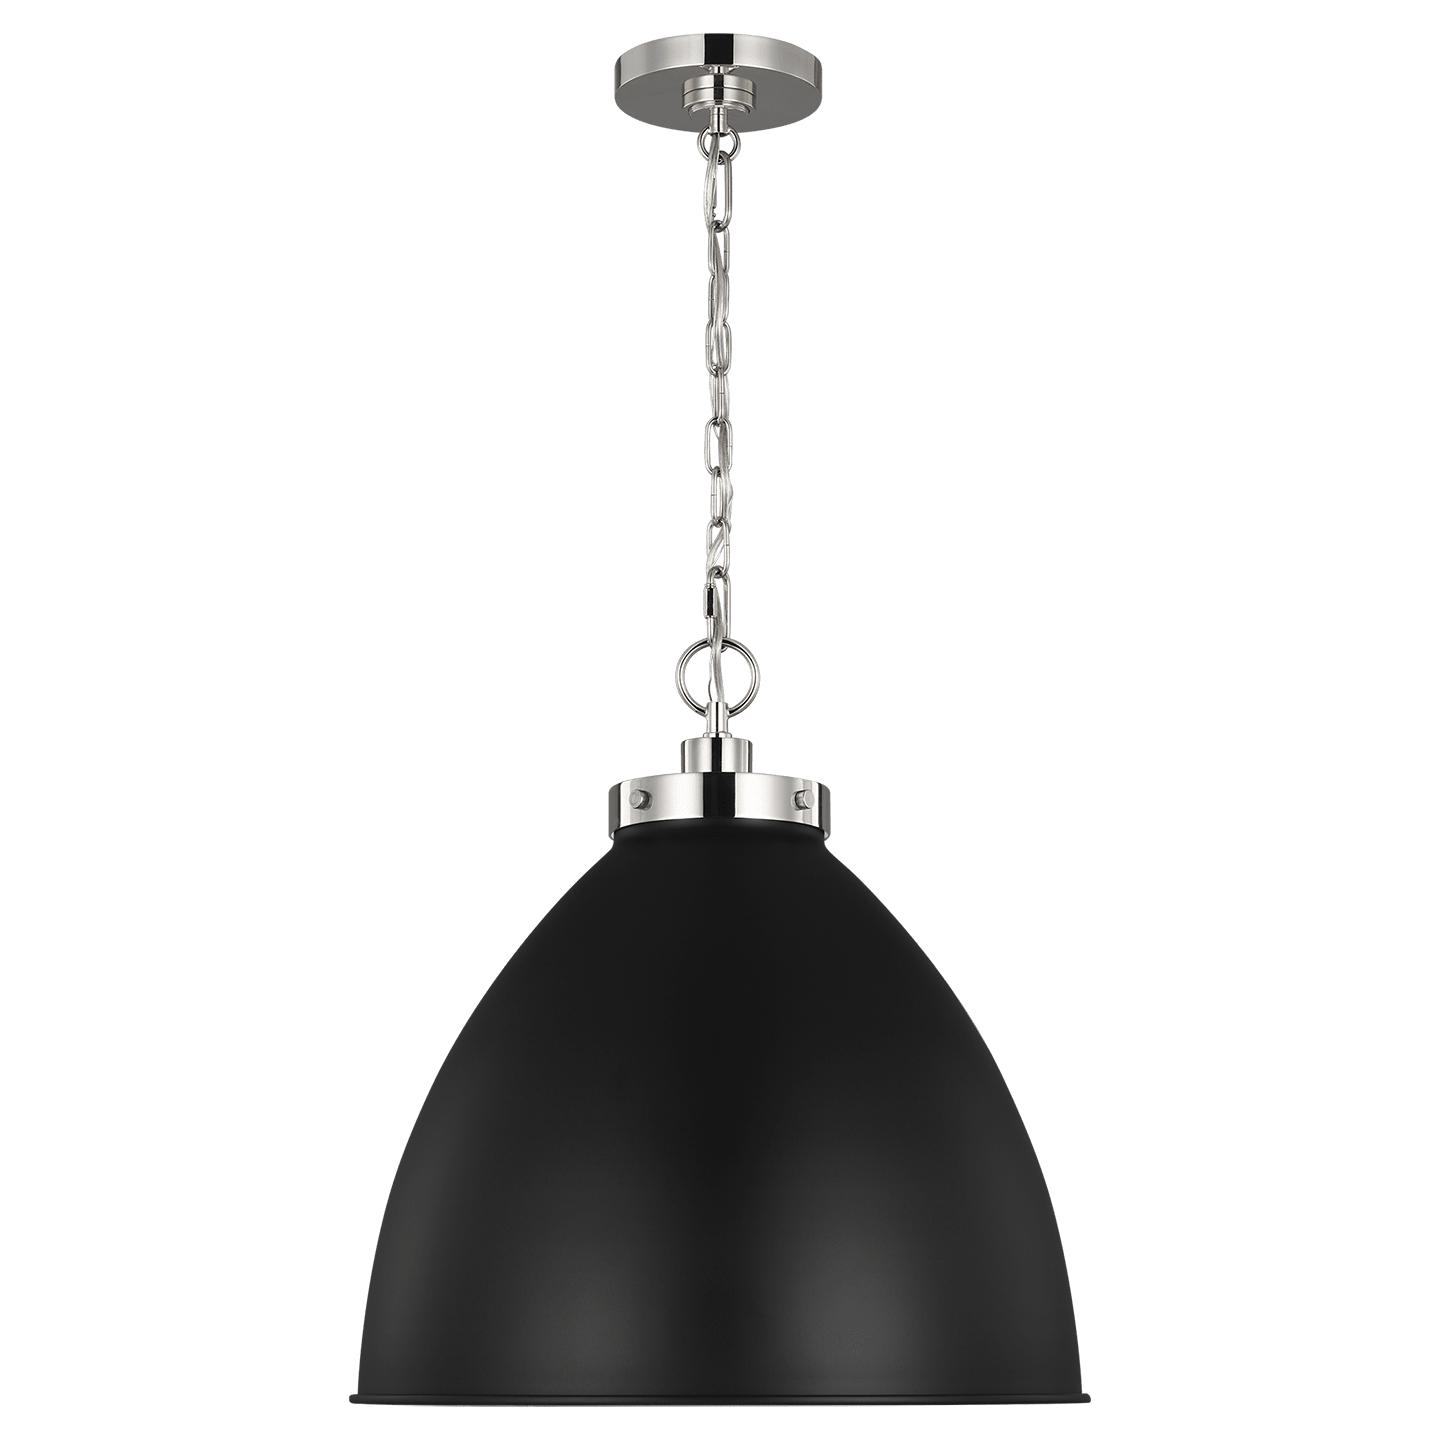 Купить Подвесной светильник Wellfleet Large Dome Pendant в интернет-магазине roooms.ru